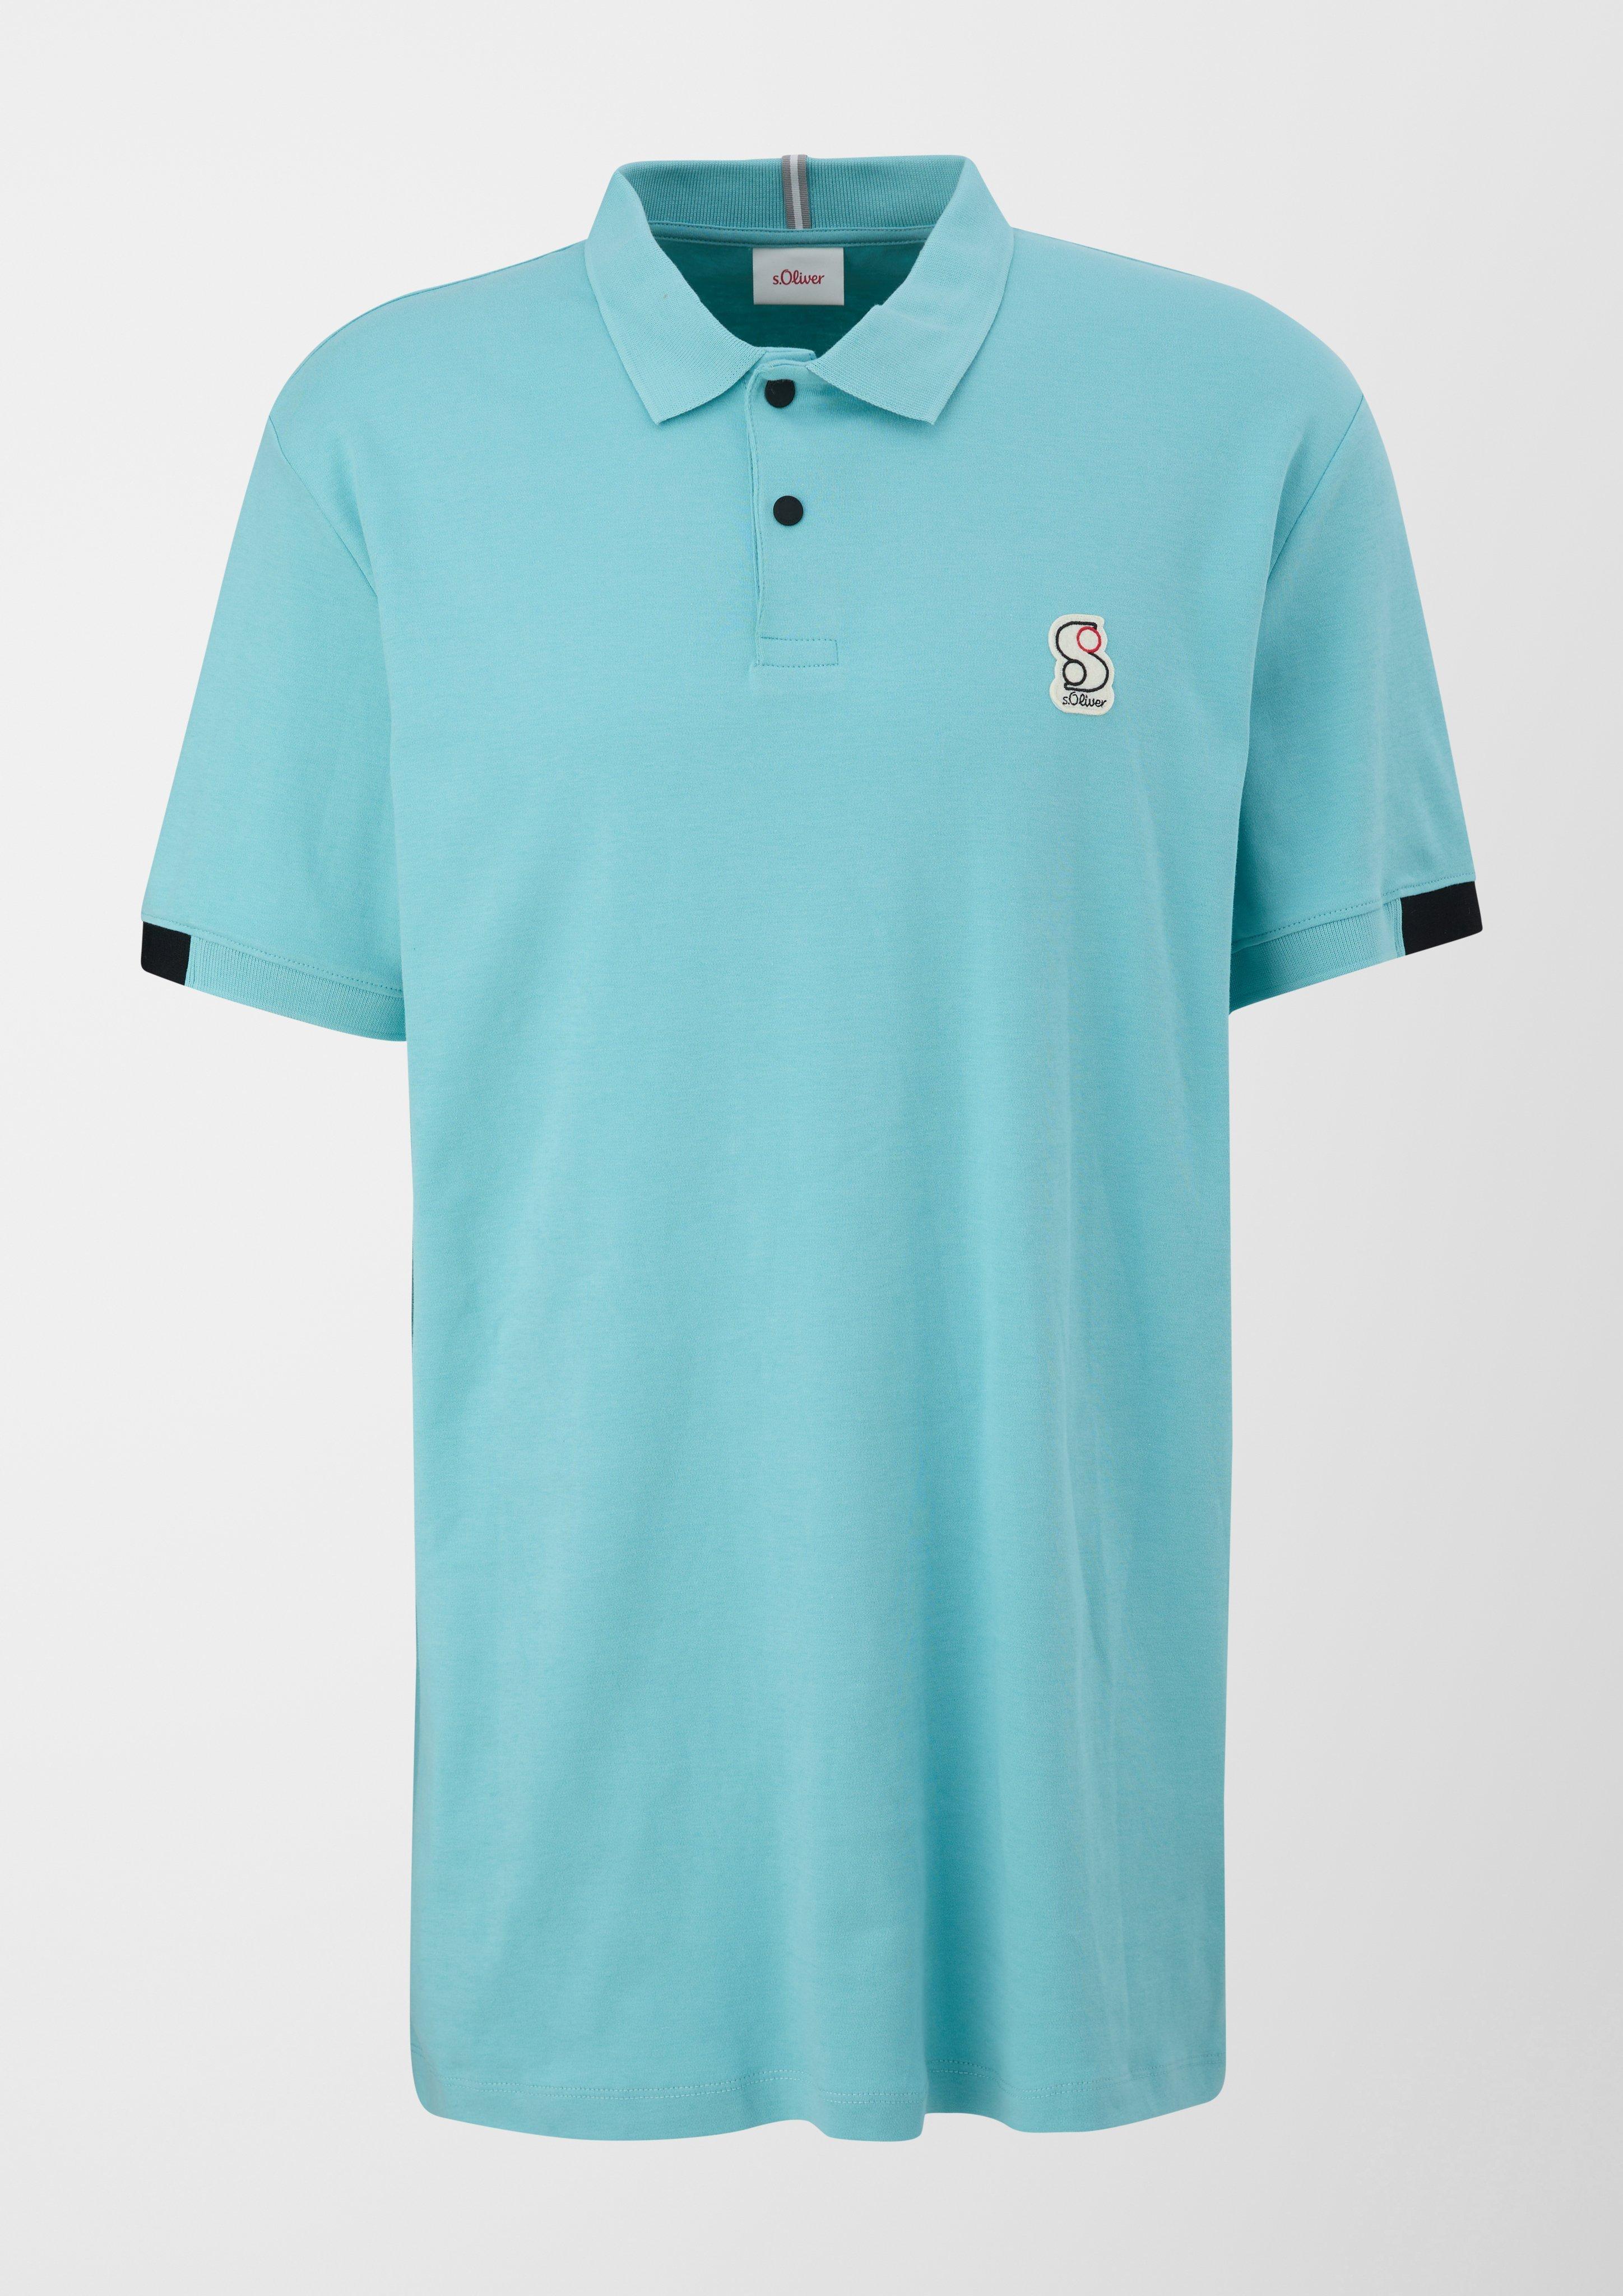 Polo shirt with navy appliqué a logo 